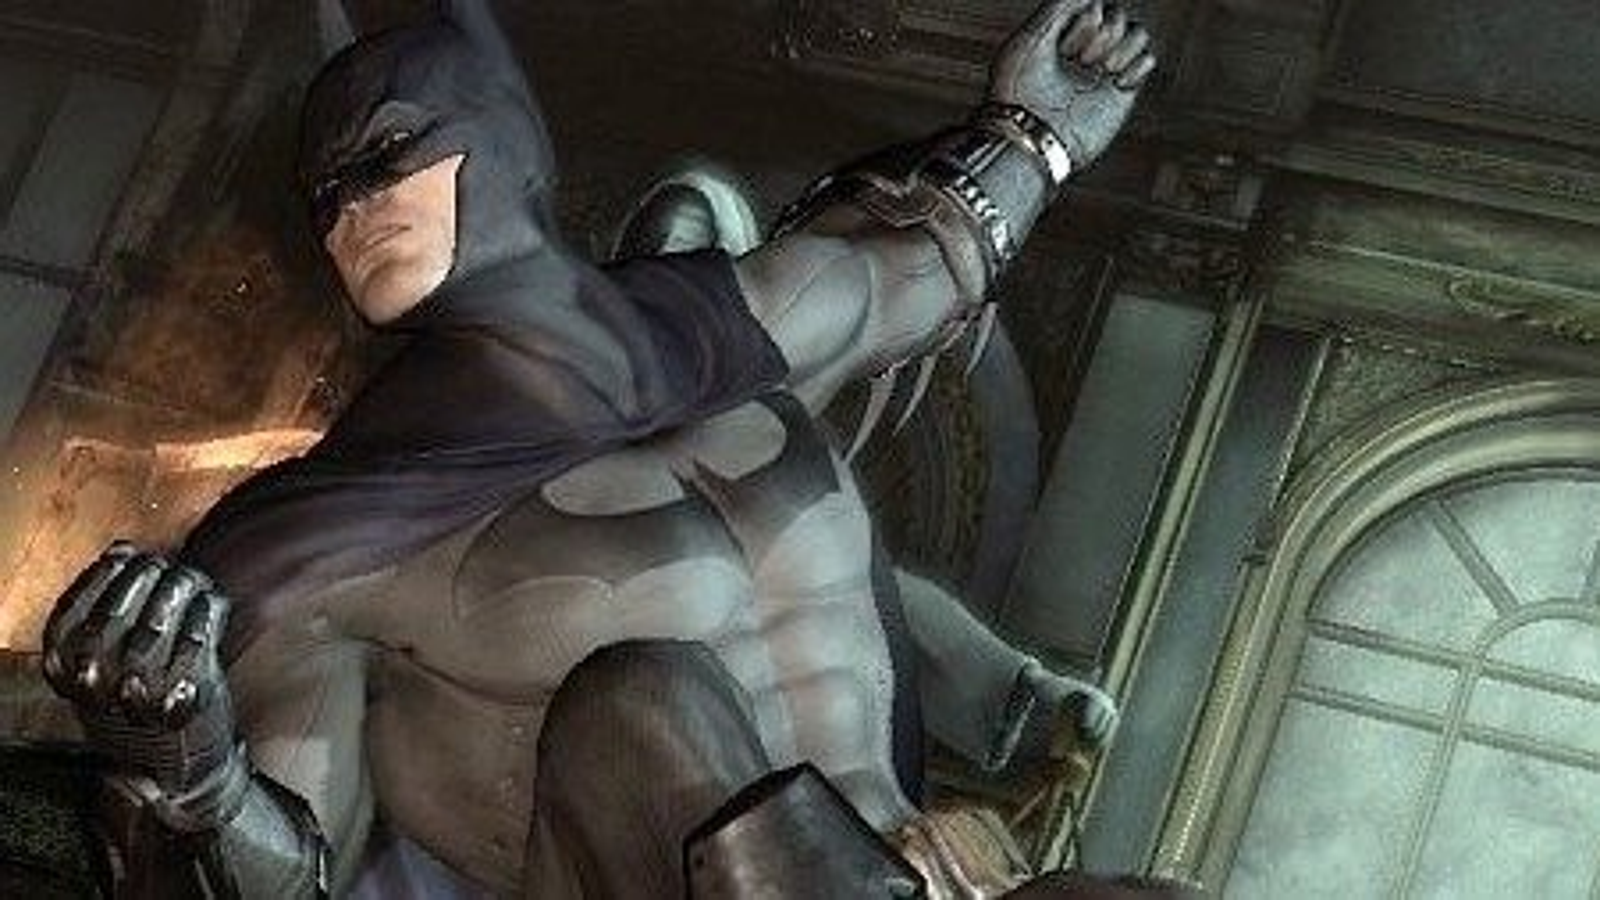 Batman: Arkham City Review